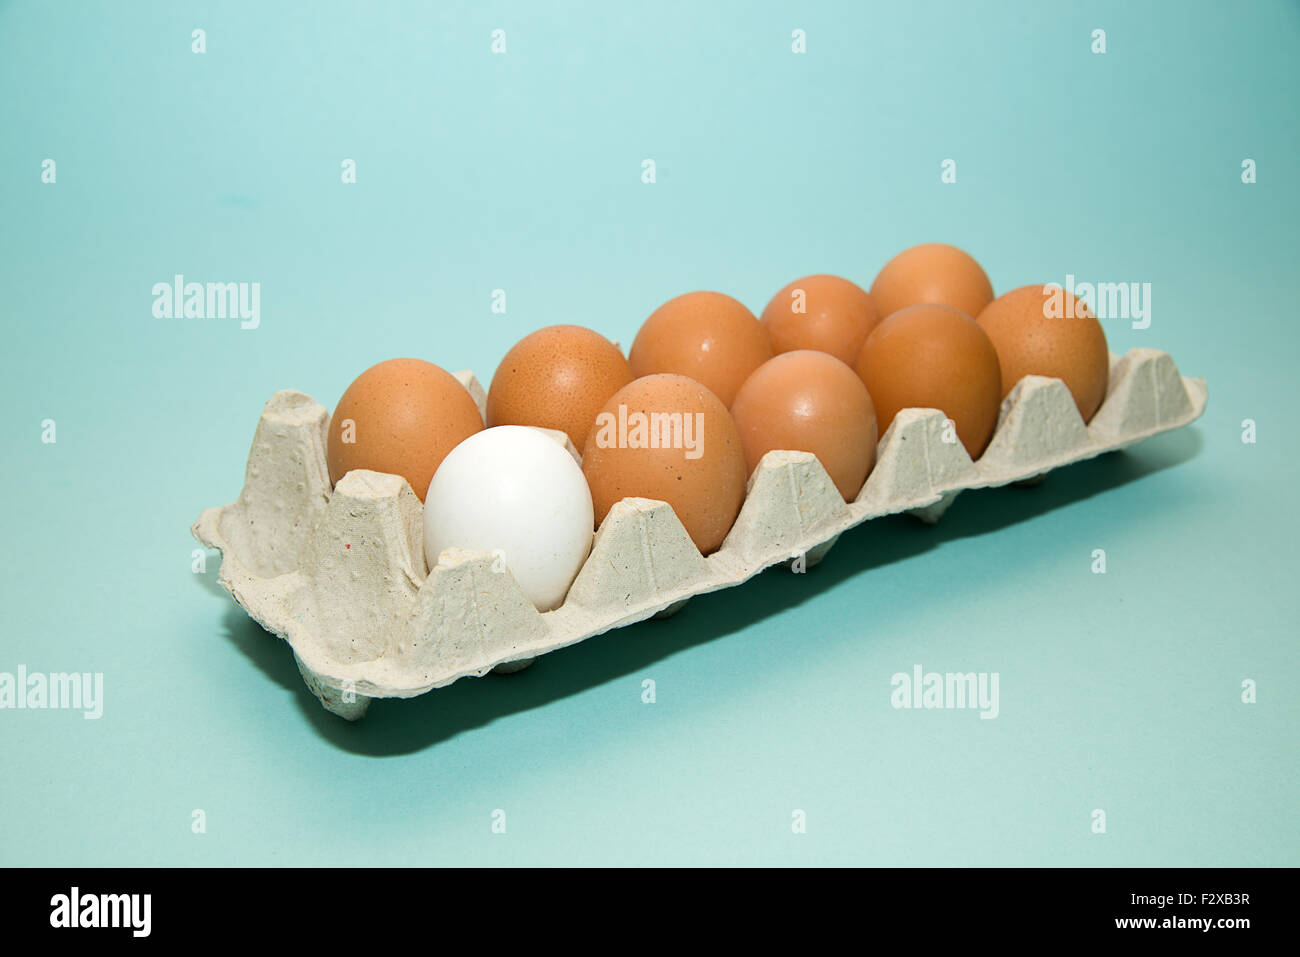 Uova di gallina di diversi colori nella confezione su blu Foto Stock